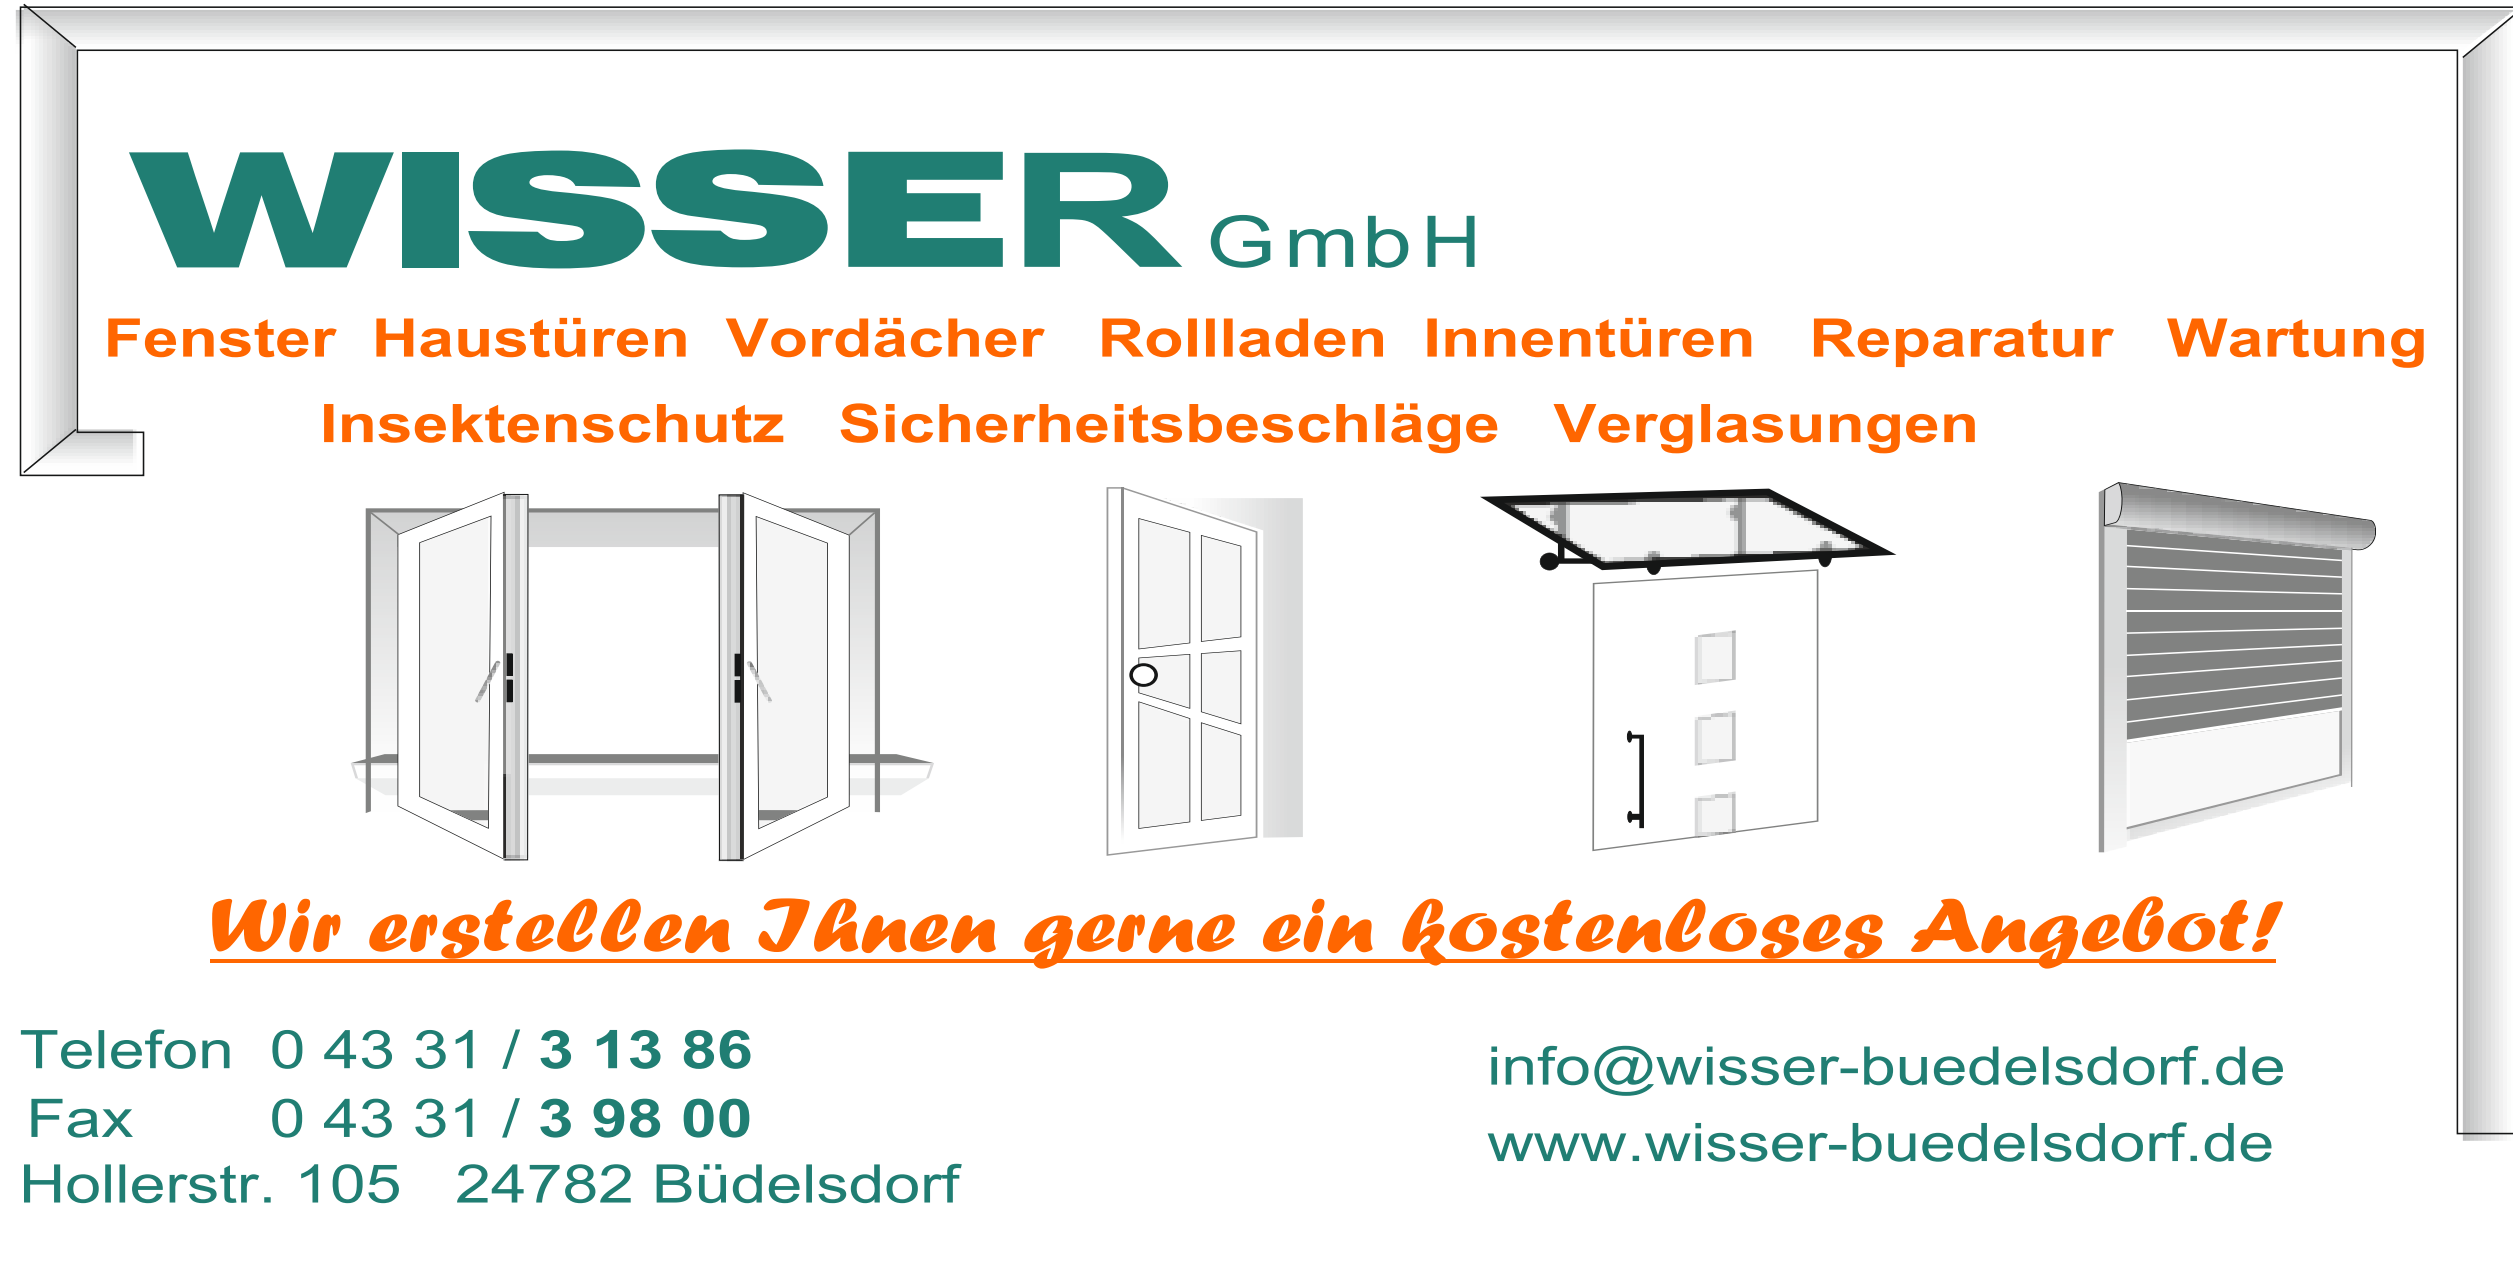 Fotos - Wisser GmbH - 3